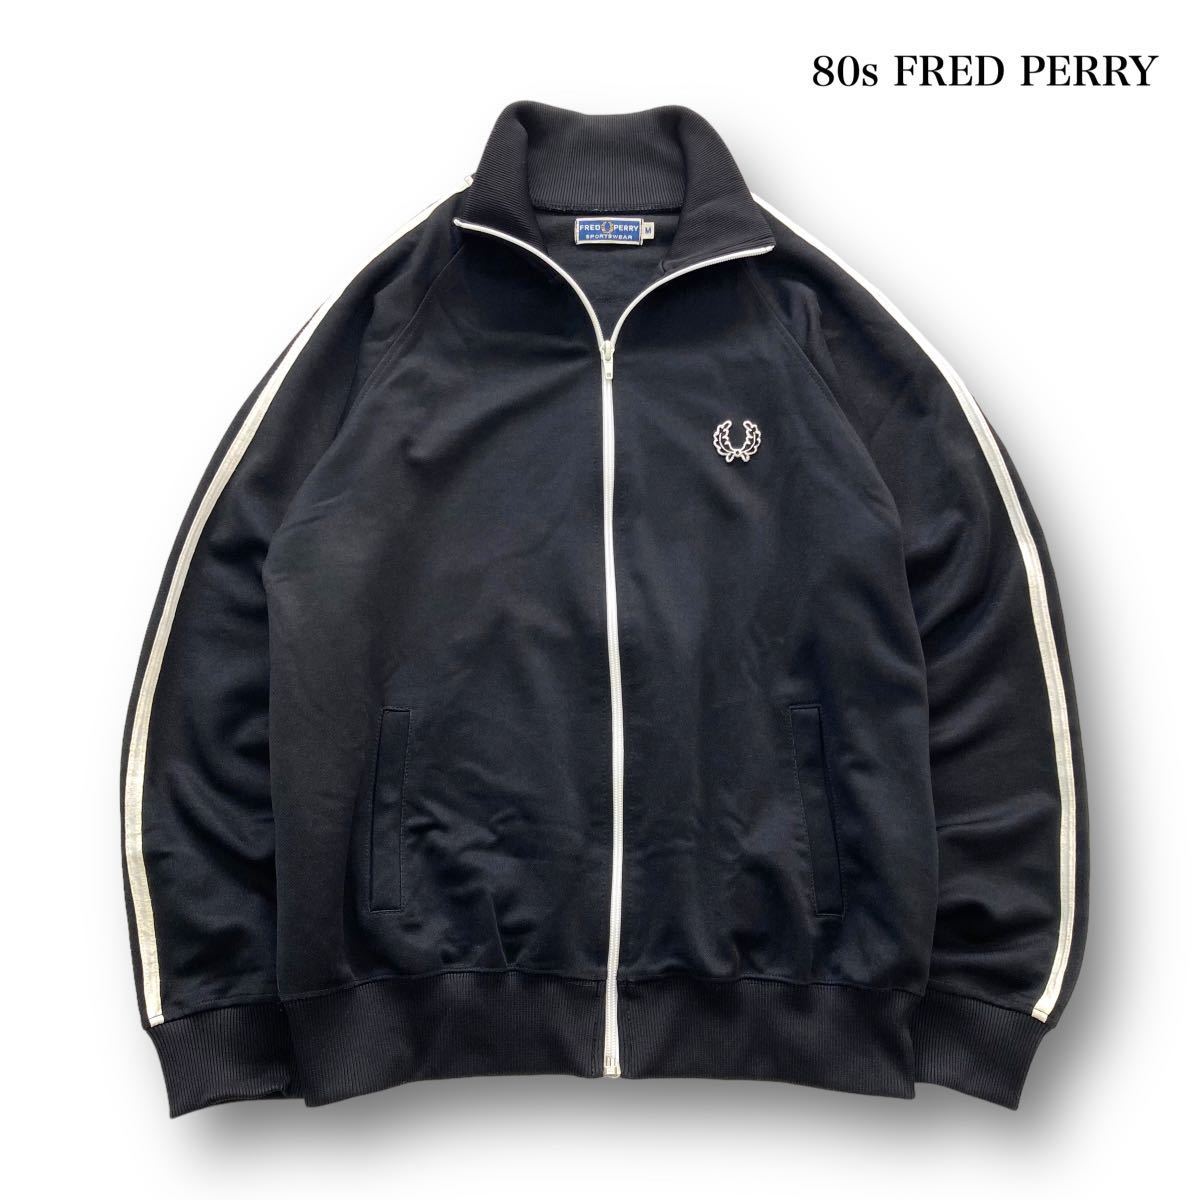 FRED PERRY】80s フレッドペリー トラックジャケット ジャージ